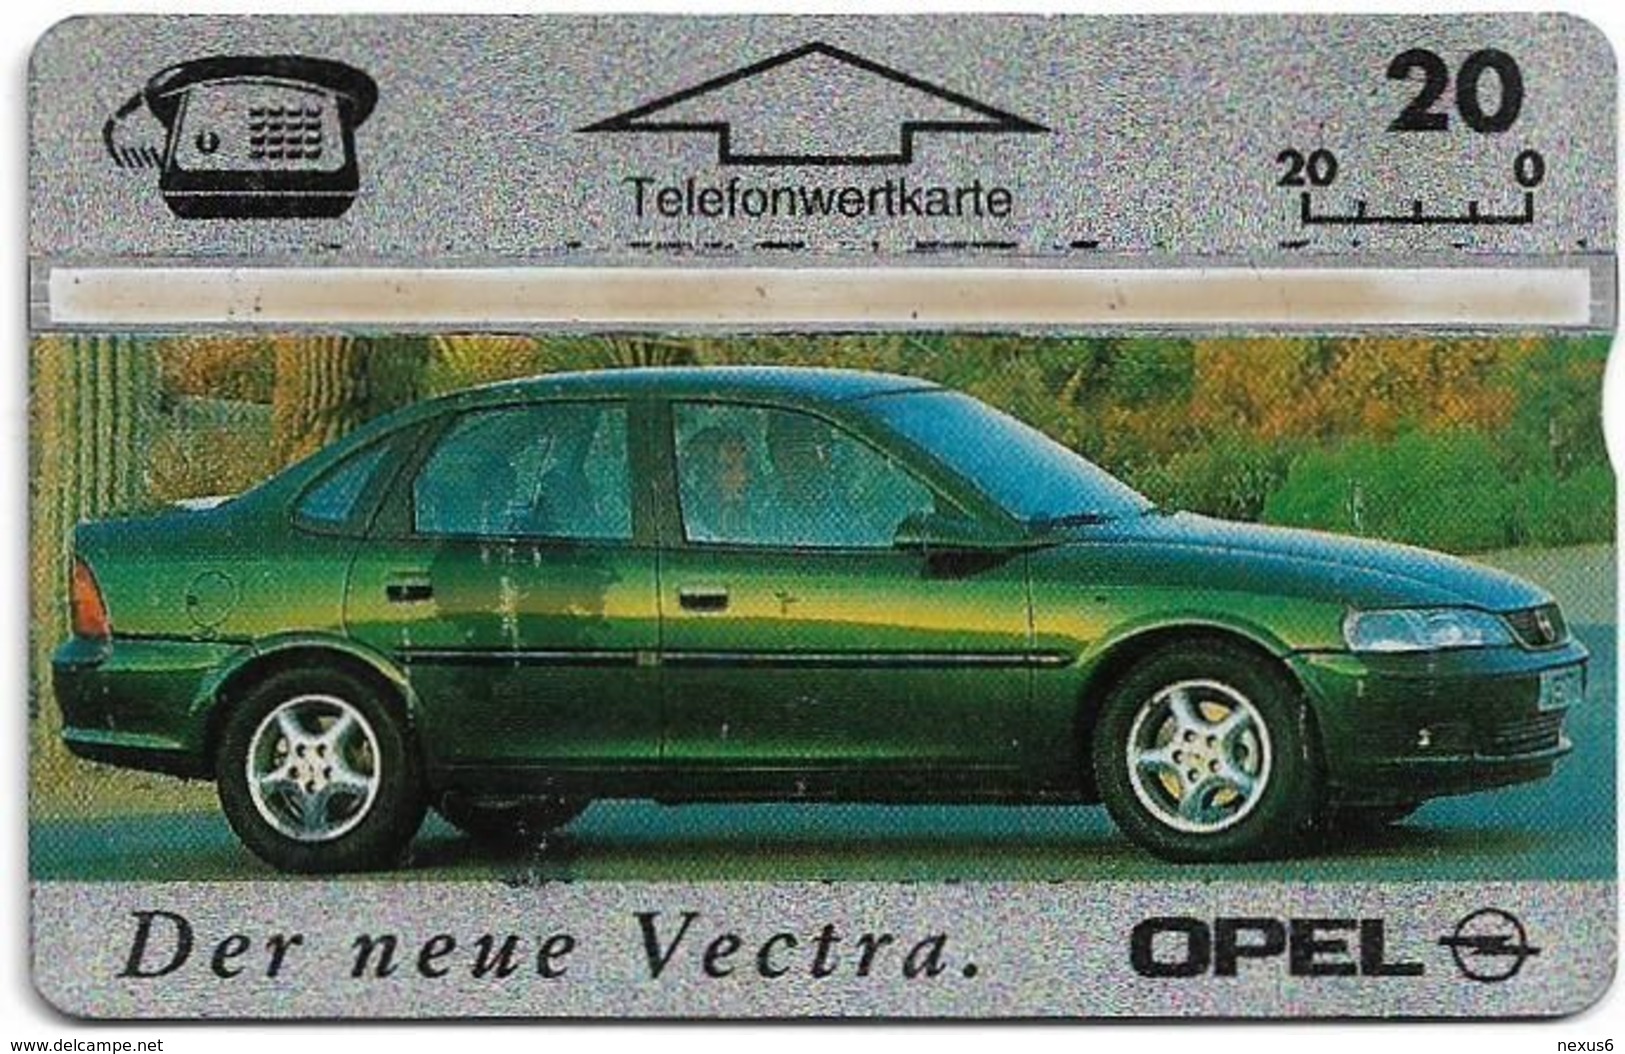 Austria - L&G - P Series - P598 - Opel Vectra - 510L - 10.1995, 20öS, 11.930ex, Used - Oostenrijk